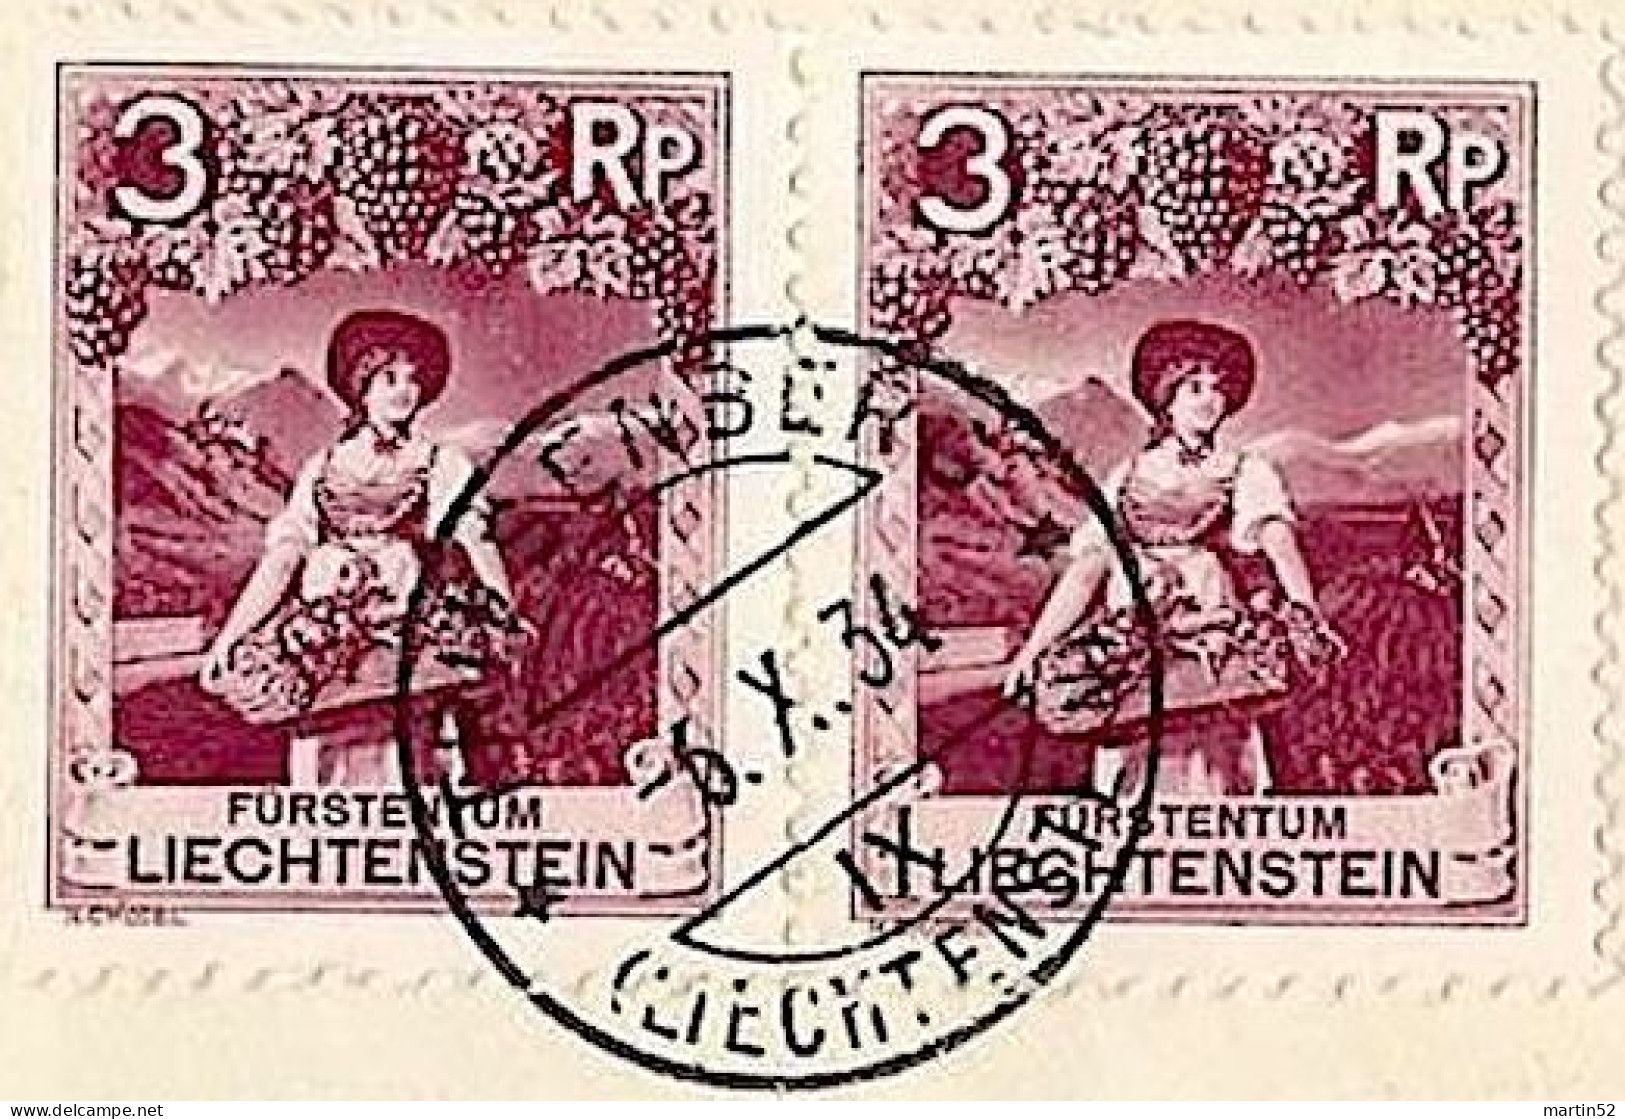 Liechtenstein 1927: Portomarke Schweiz Zu+Mi N° 42 Mit Stempel TRIESENBERG ?.VII.27 (LBK CHF 20.00) - Postage Due